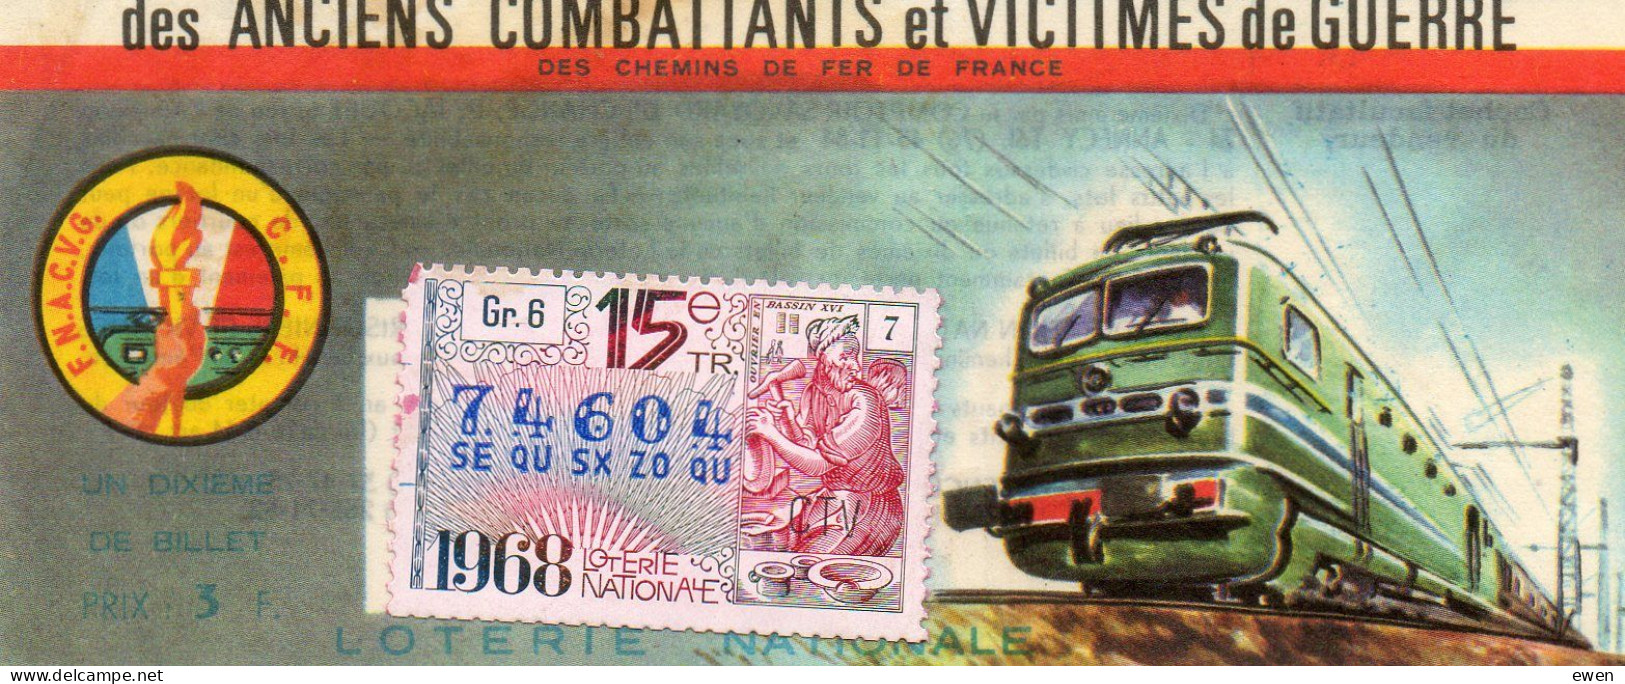 Billet Loterie Nationale Pour Victimes De Guerre. Dessin De Locomotive. 1968. - Billets De Loterie